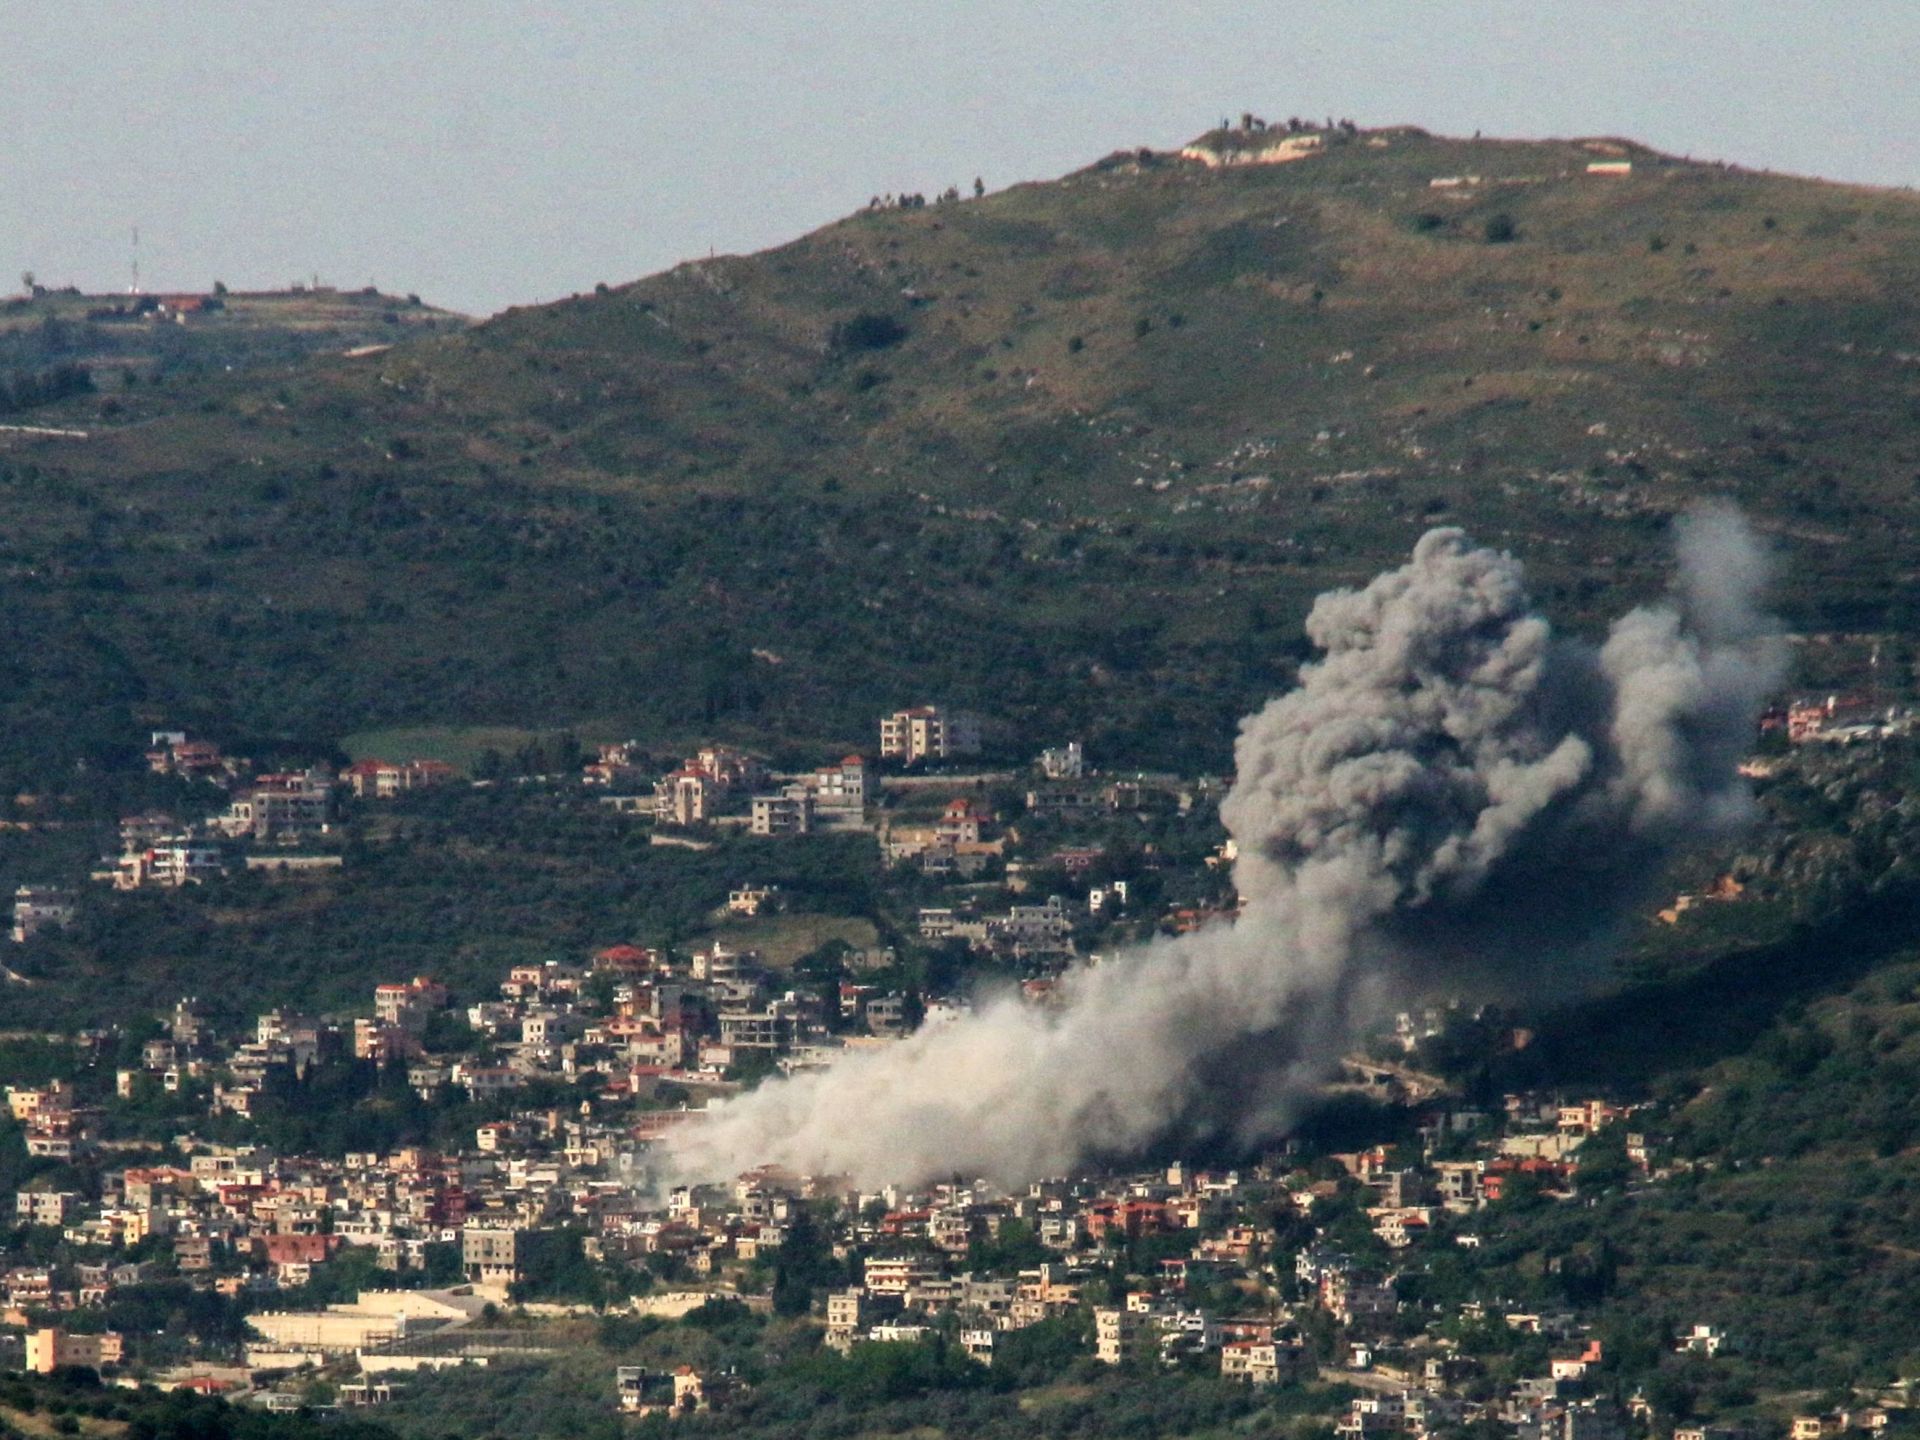 حزب الله وإسرائيل يتبادلان القصف وفرنسا تتسلم رد لبنان حول احتواء التصعيد | أخبار – البوكس نيوز